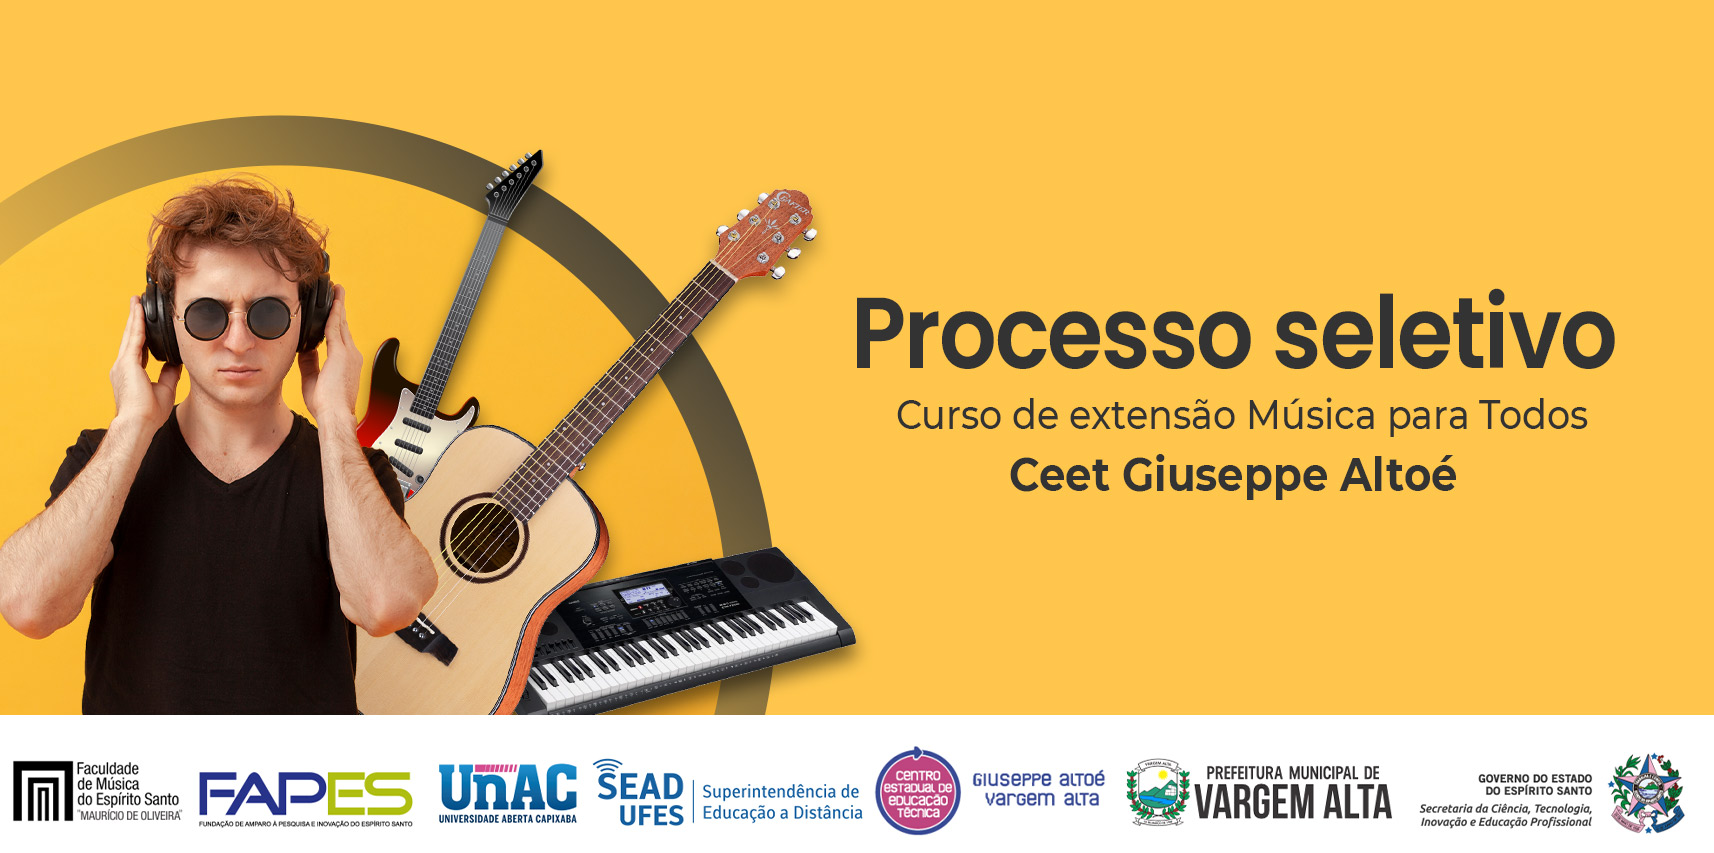 Processo seletivo para alunos do curso de extensão música para todos do Ceet Giuseppe Altoé